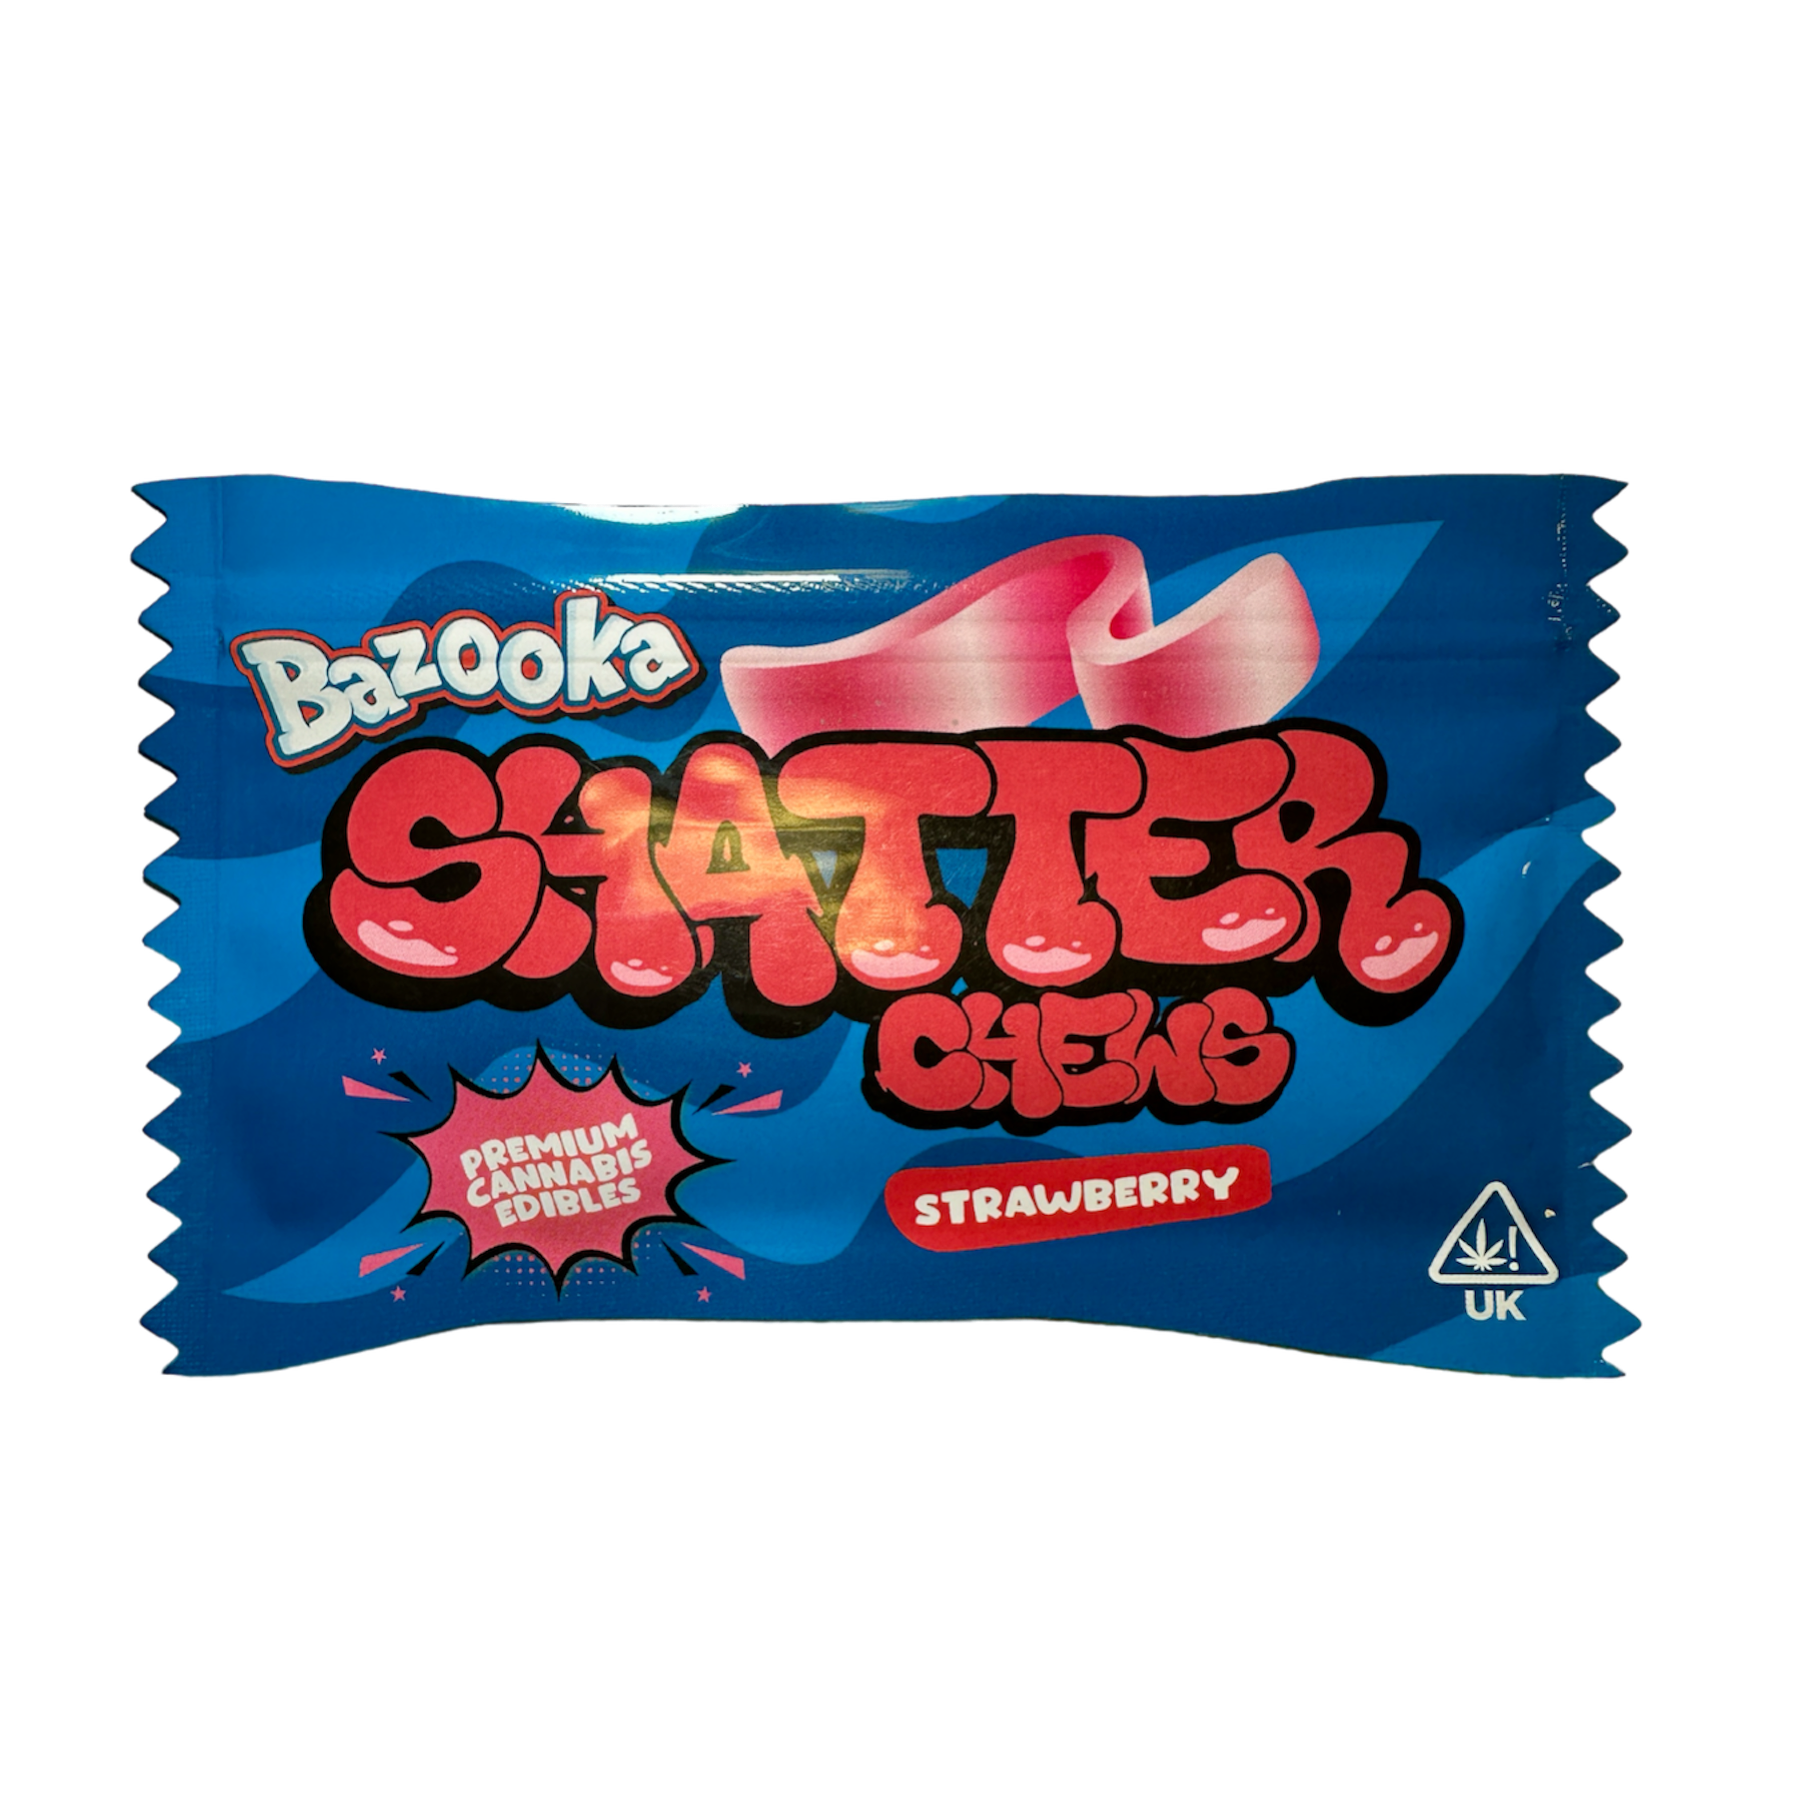 buy-bazooka-shatter-chews-strawberry-uk